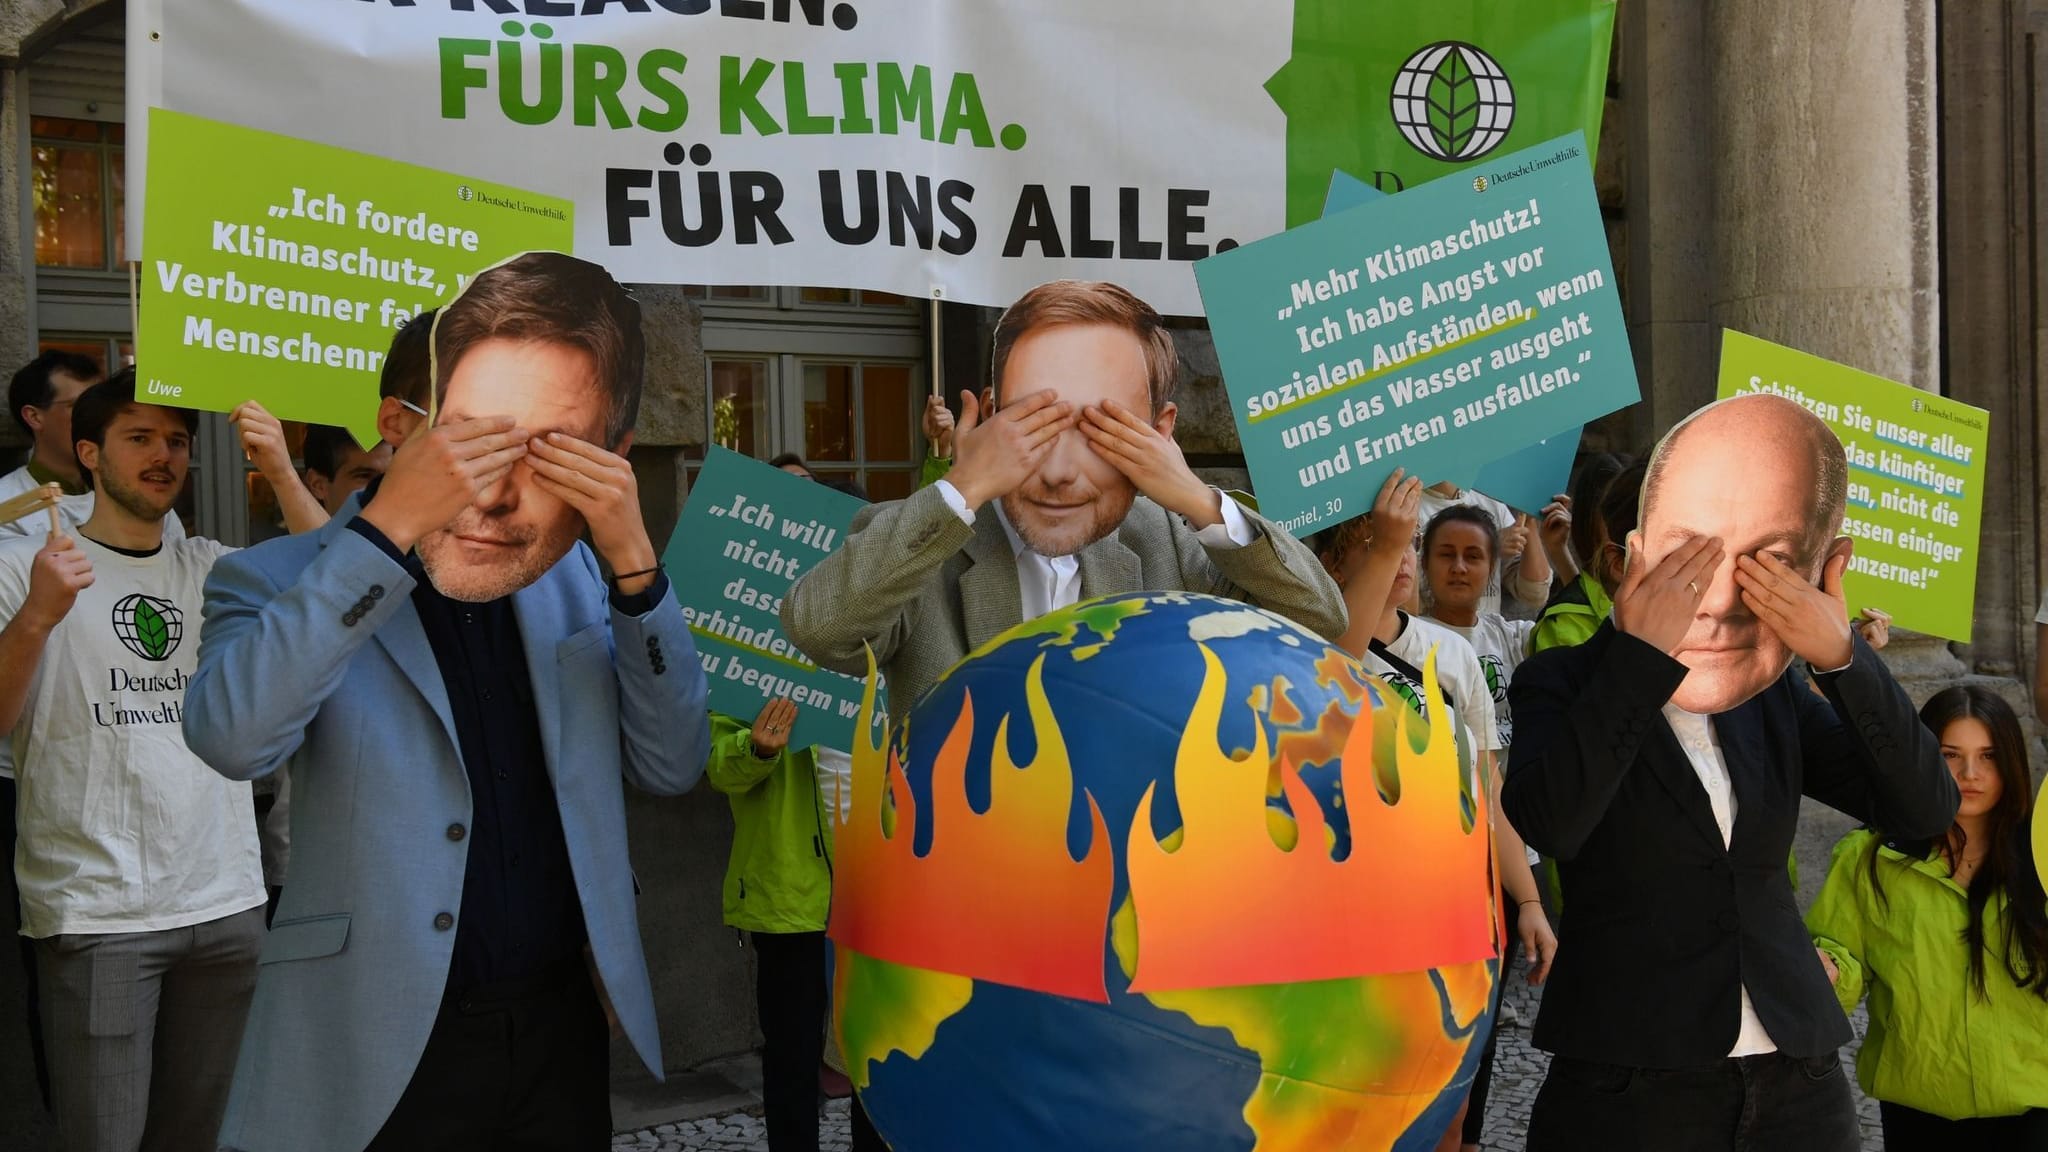 Bundesregierung will Klimaschutz-Urteil prüfen